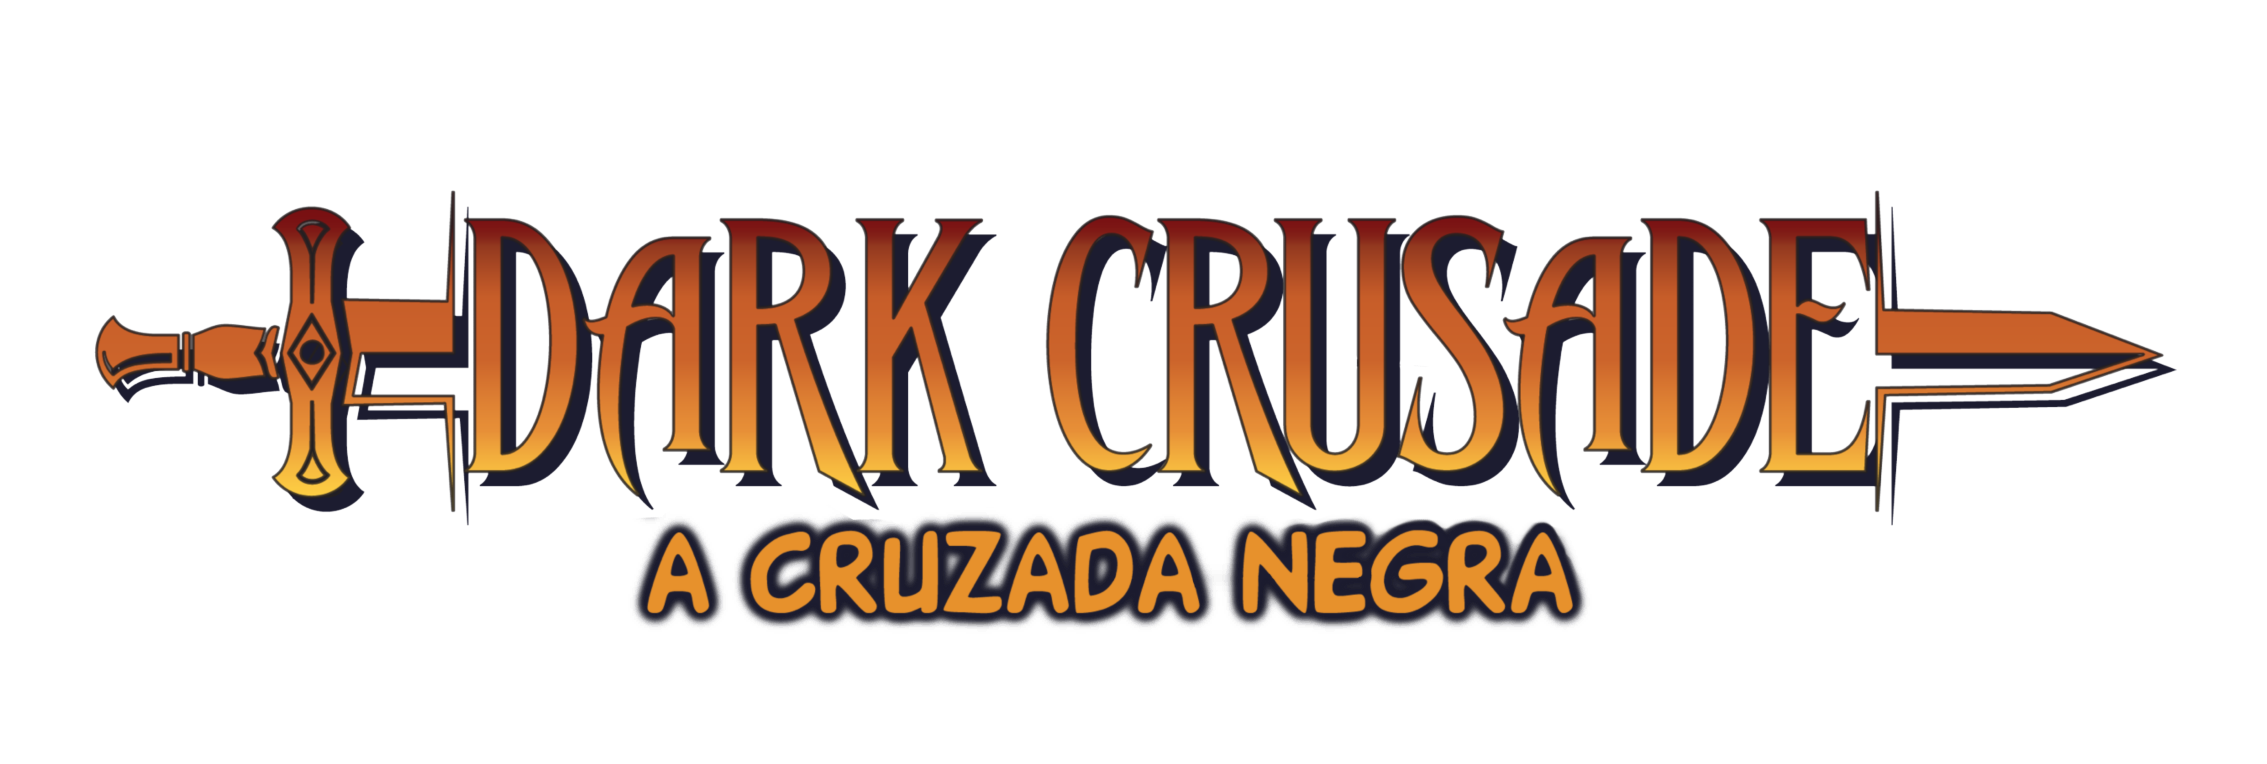 Dark Crusade - A Cruzada Negra